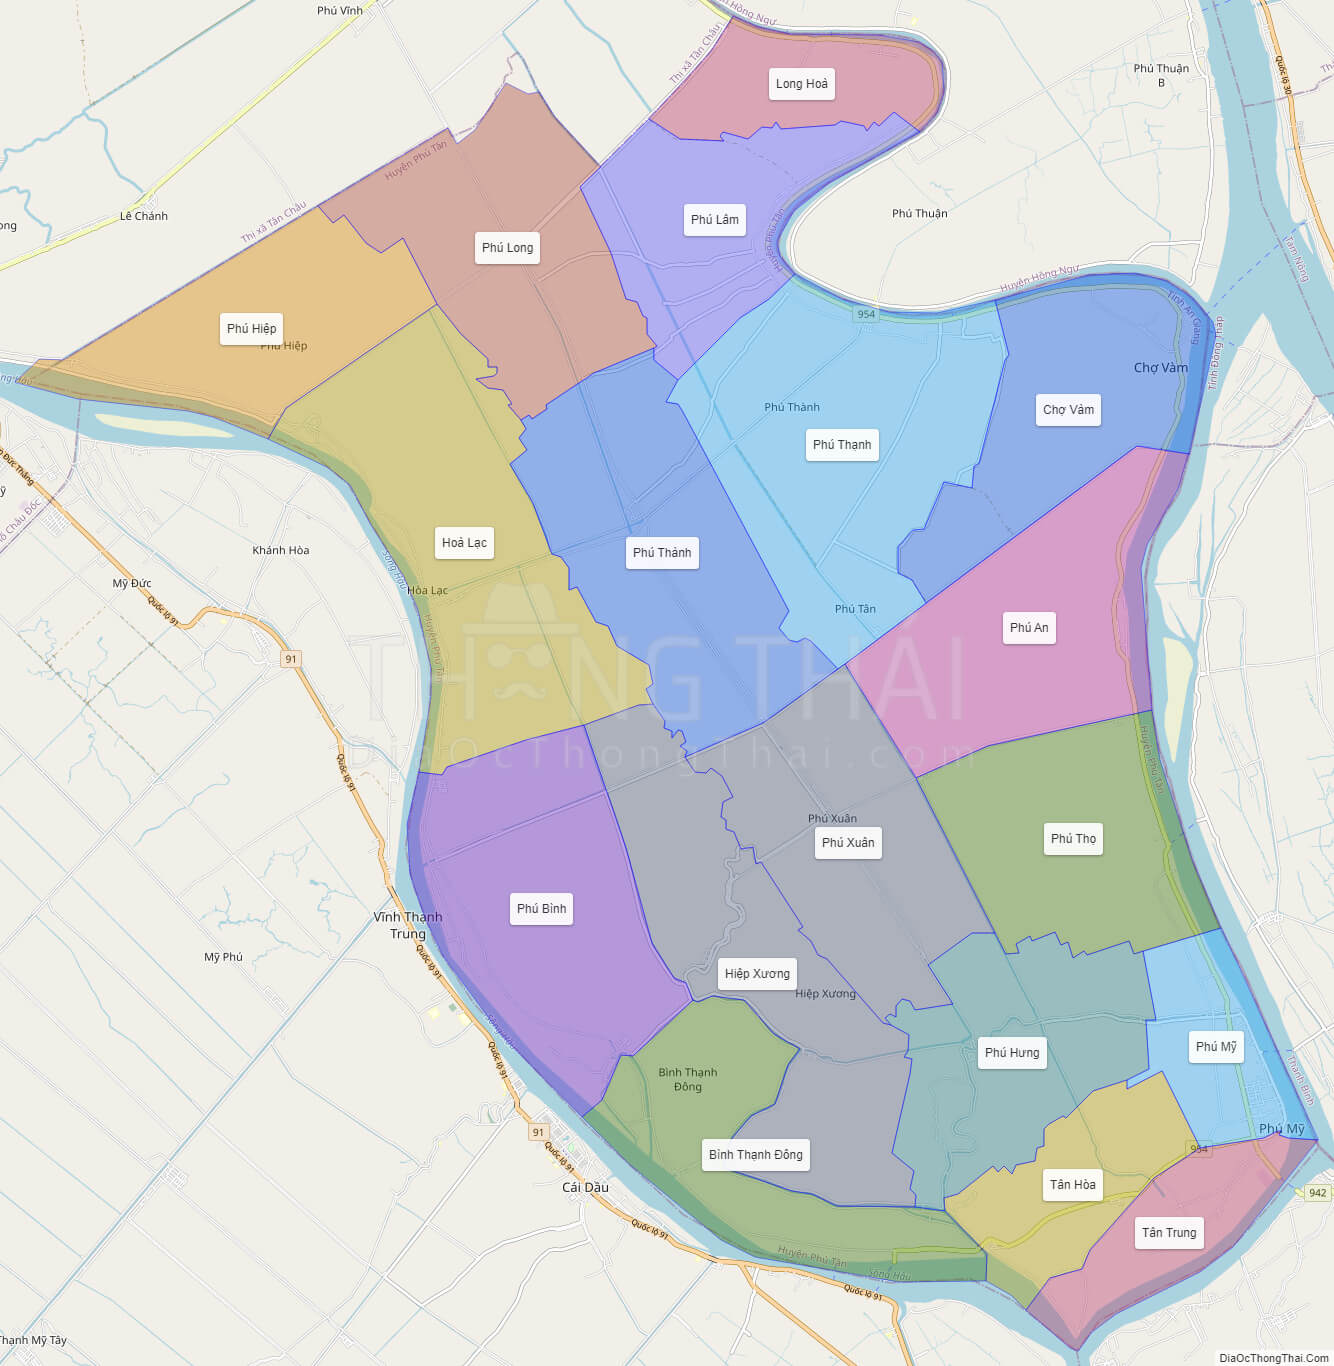 Bạn đang tìm kiếm địa ốc ở Phú Tân An Giang? Hãy xem bản đồ hành chính huyện Châu Phú để tìm chính xác vị trí của mình. Năm 2024, huyện này đang phát triển rất nhanh về đô thị hóa và nông nghiệp.